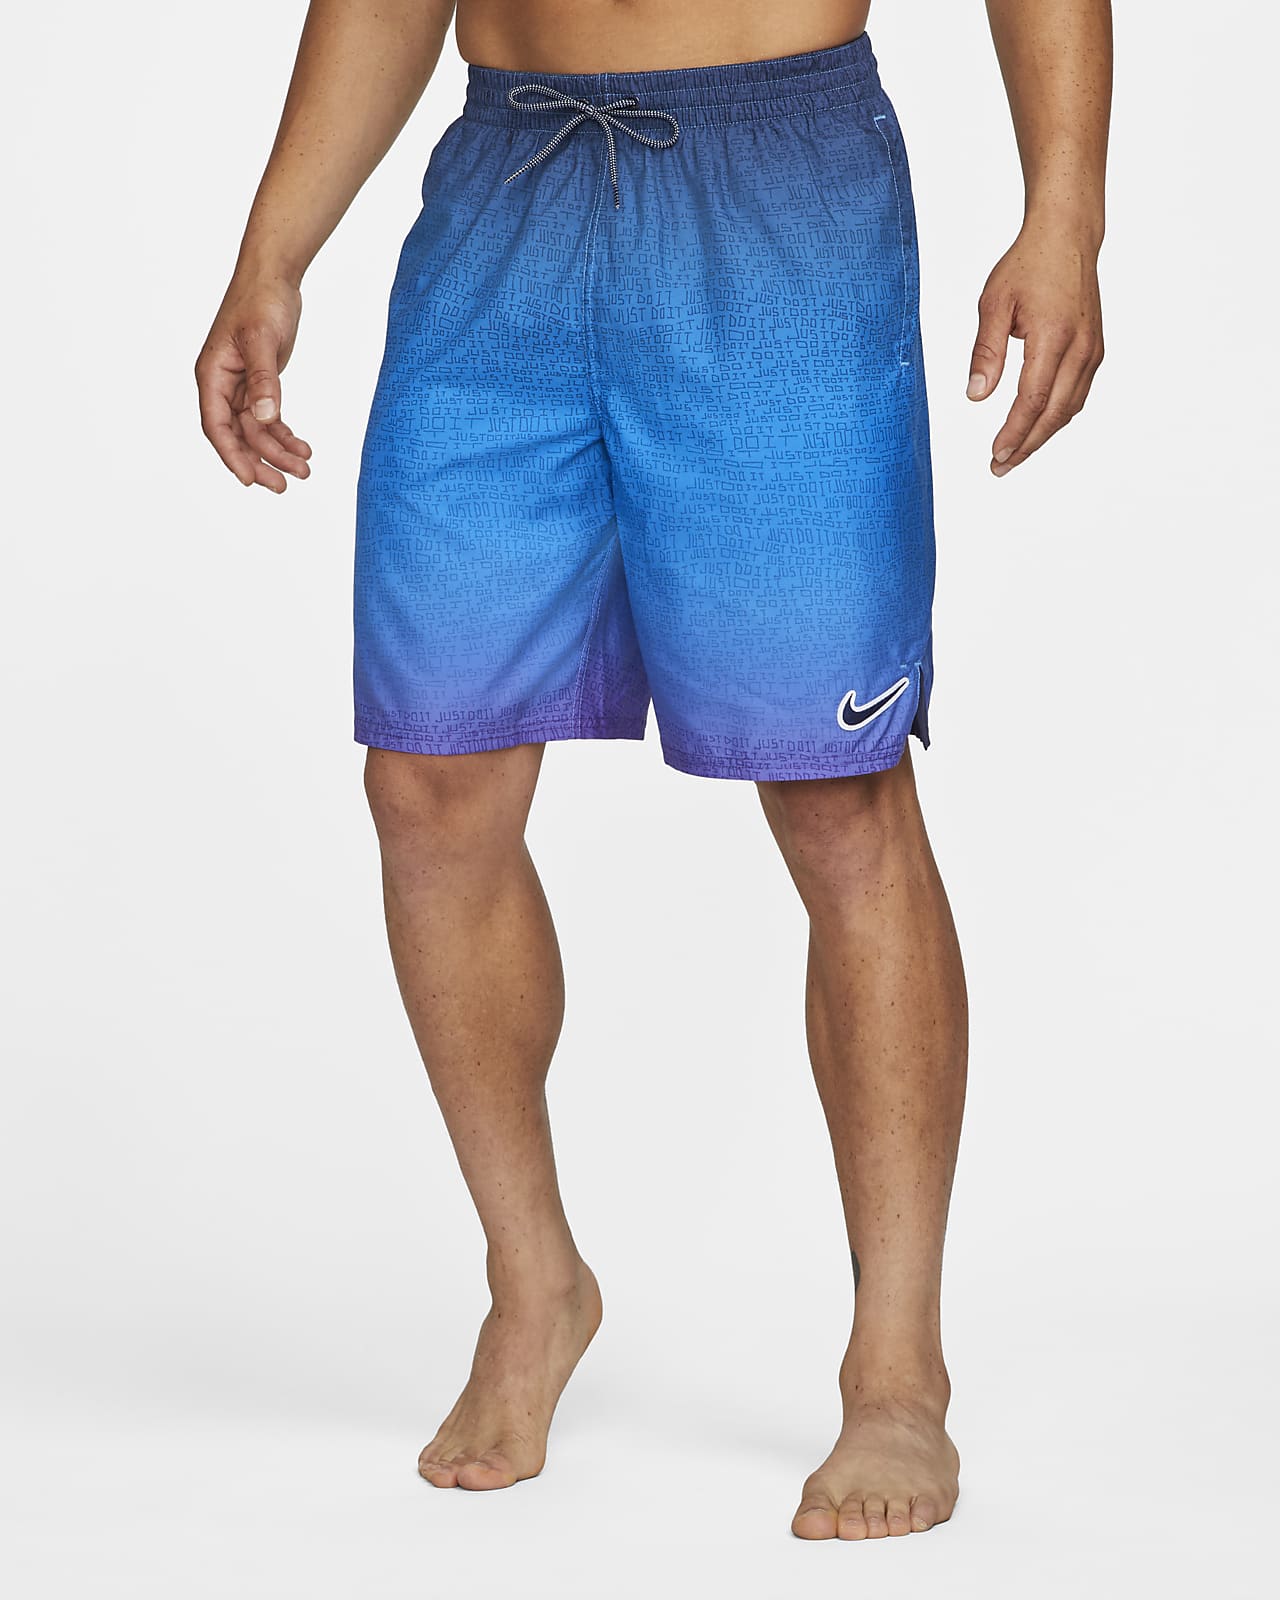 Shorts vóleibol de 23 cm para hombre Nike JDI Fade. Nike.com